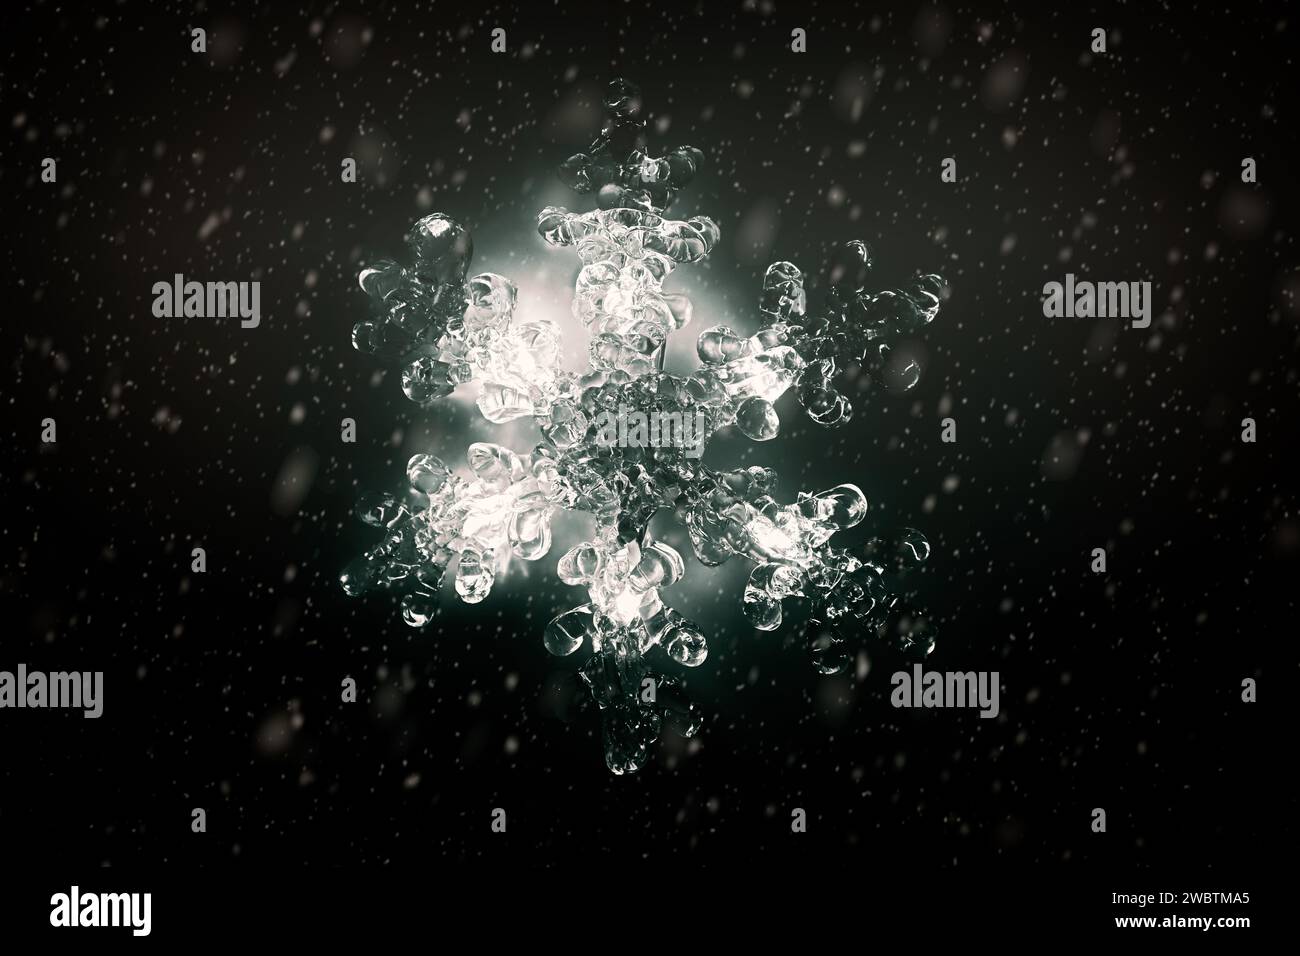 Lumière de Noël décorative en forme de flocon de neige illuminé sur fond sombre. Conversion monochrome, effet de neige ajouté. Banque D'Images